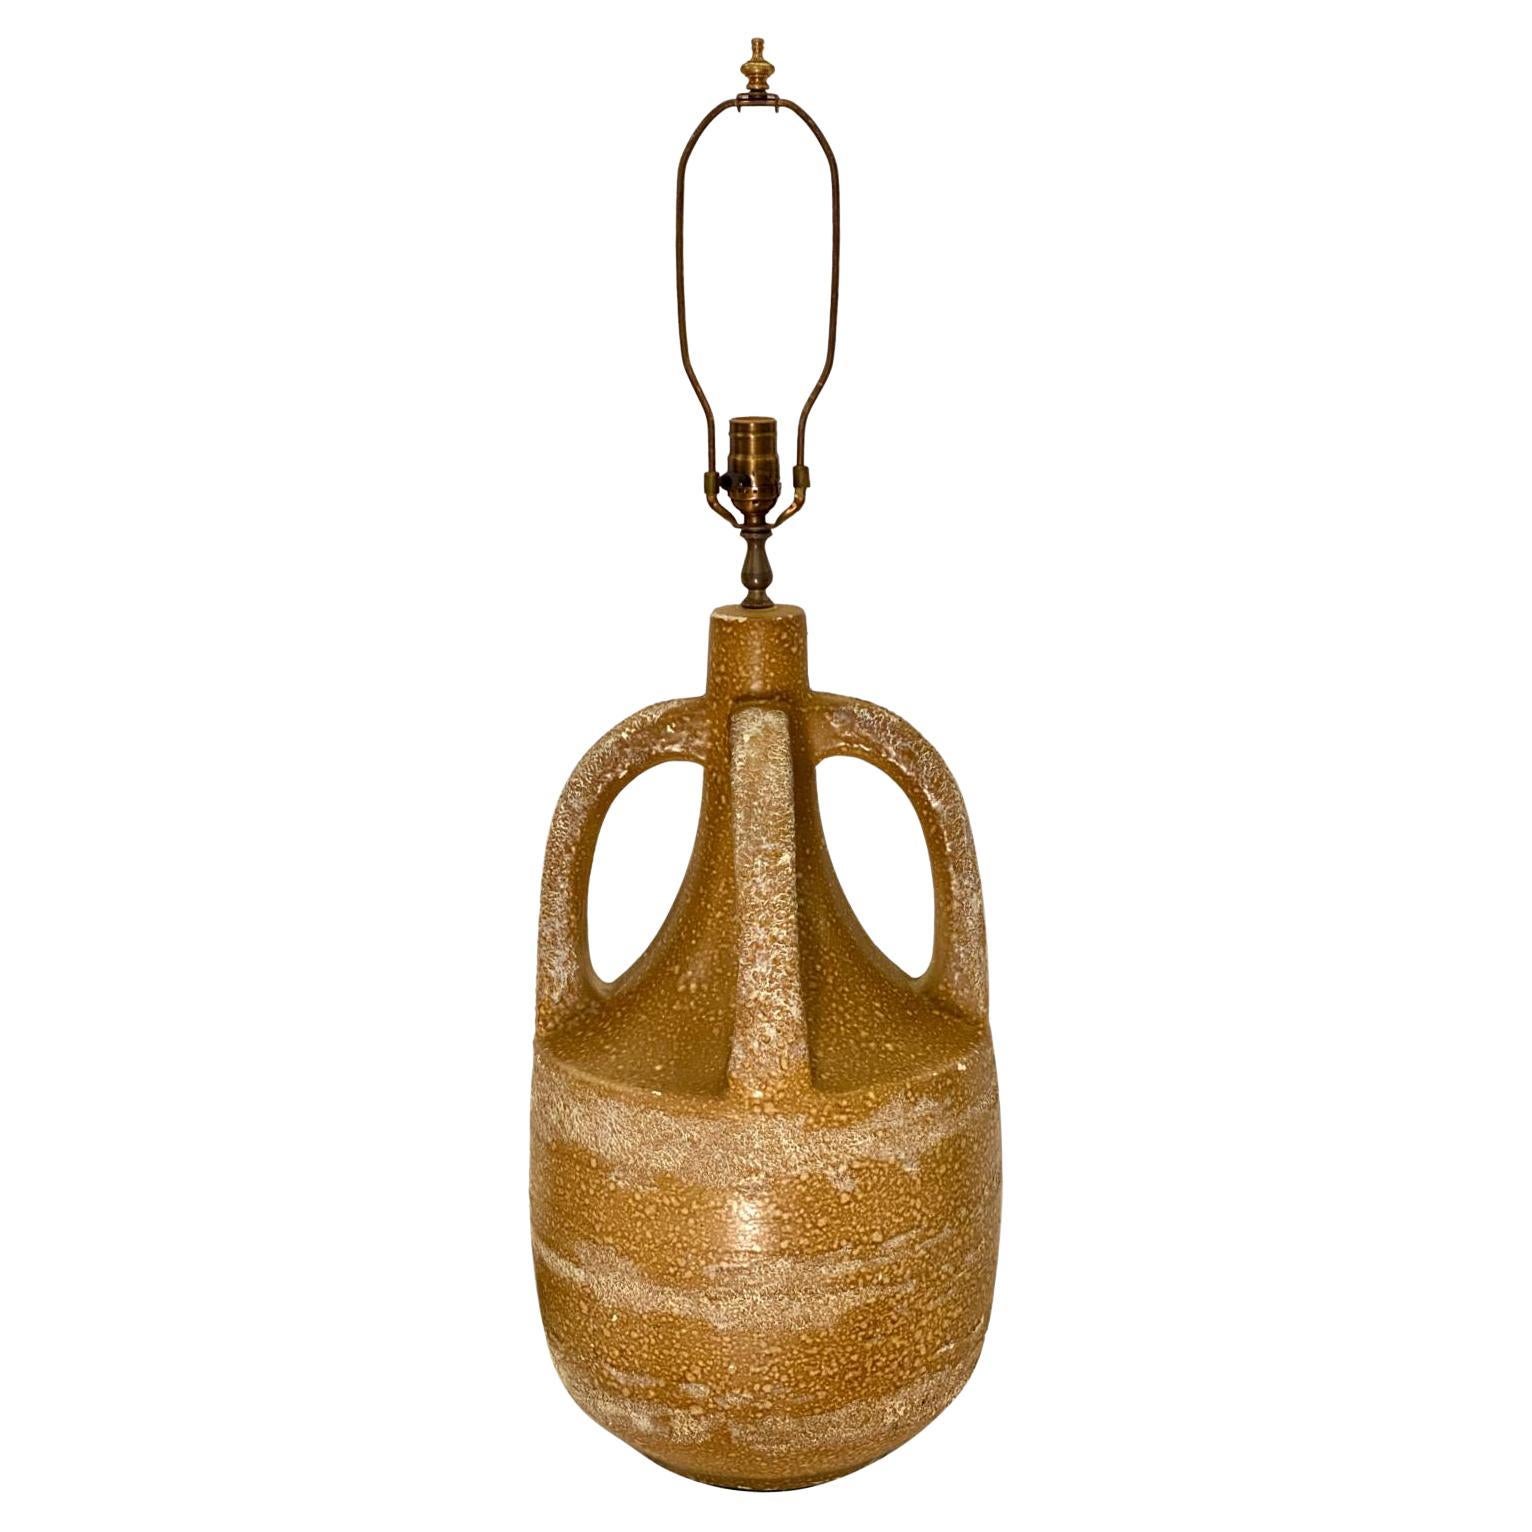 Mid Century Ceramic Amphora Table Lamp